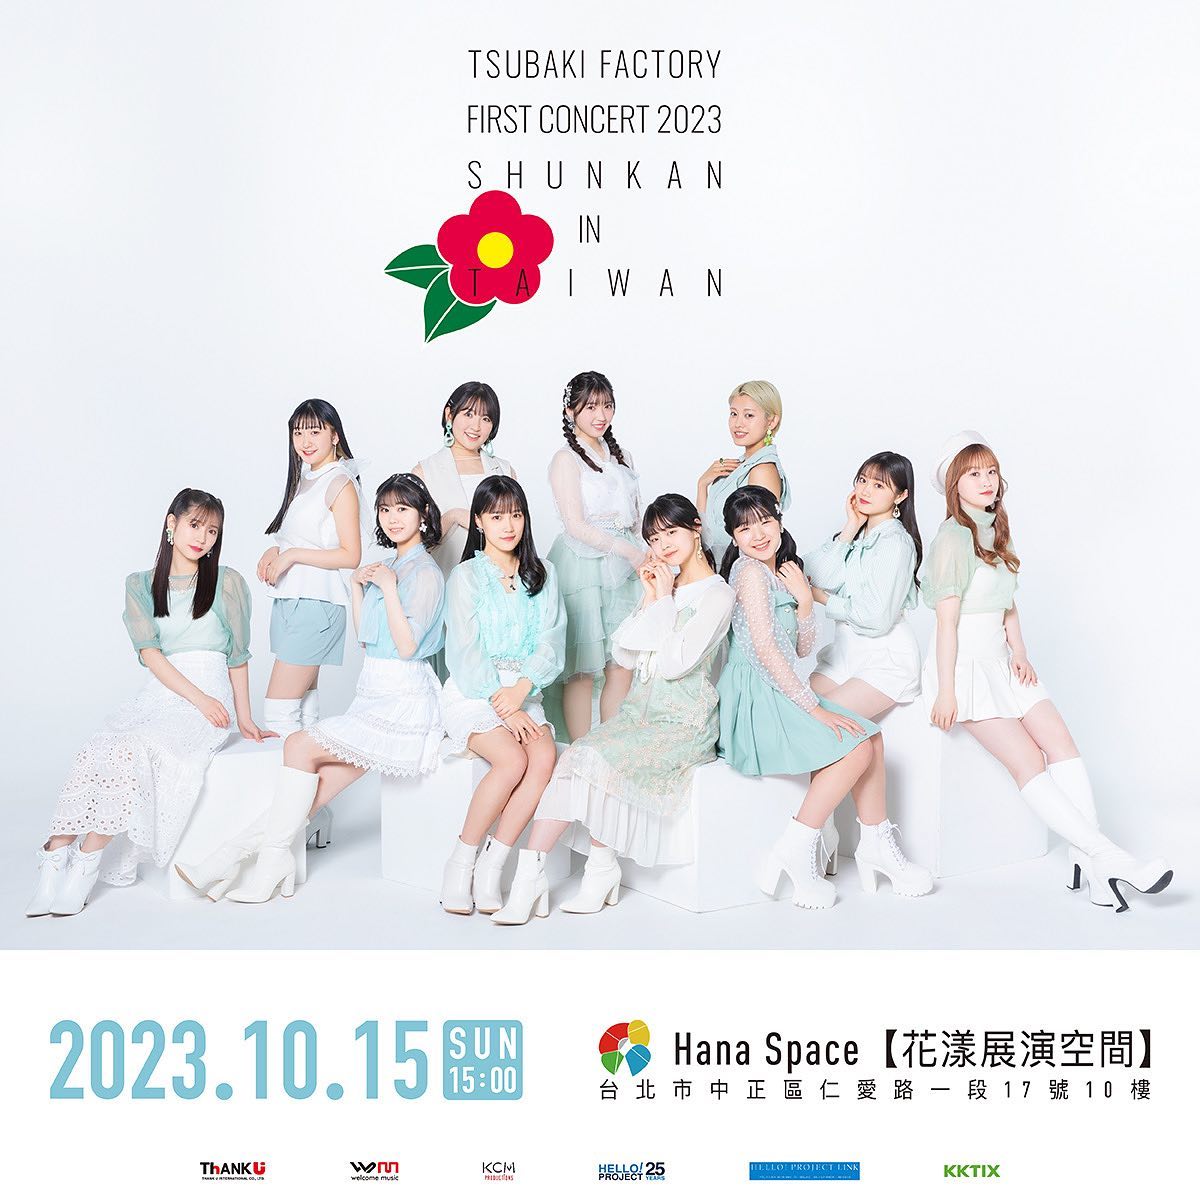 2023 早安家族Tsubaki Factory演唱會